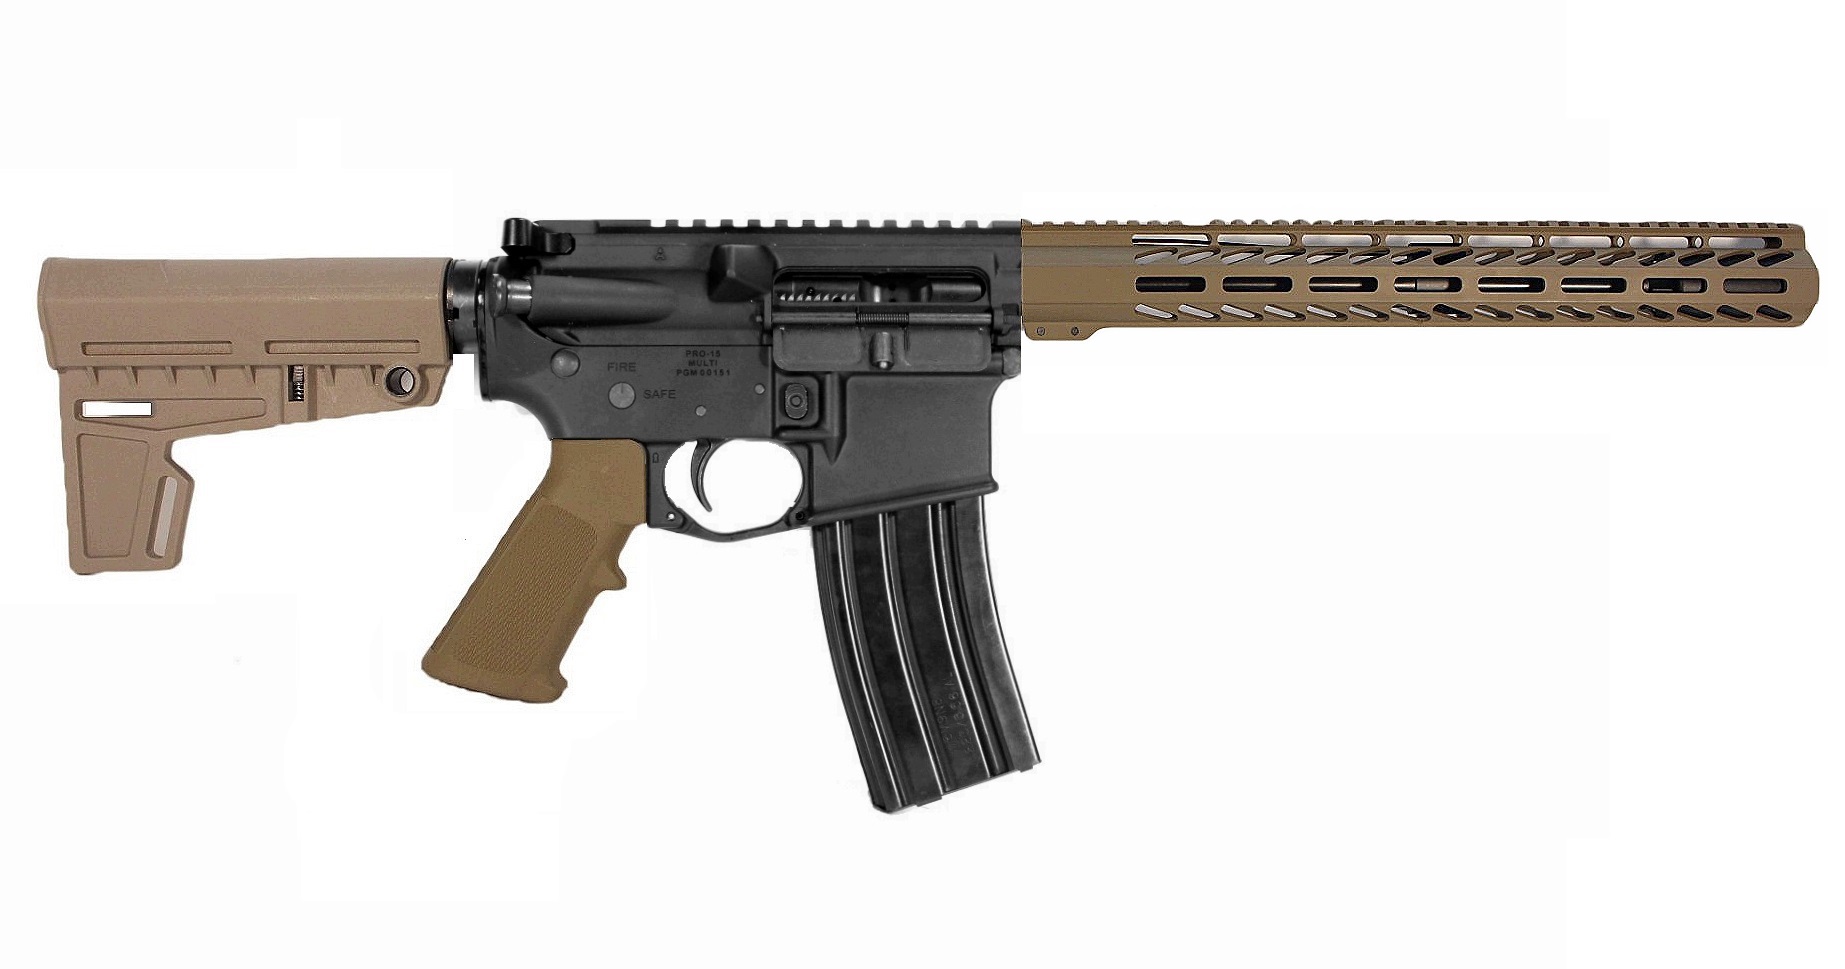 12.5 inch 6.5 Grendel AR Pistol BLK/FDE Color 